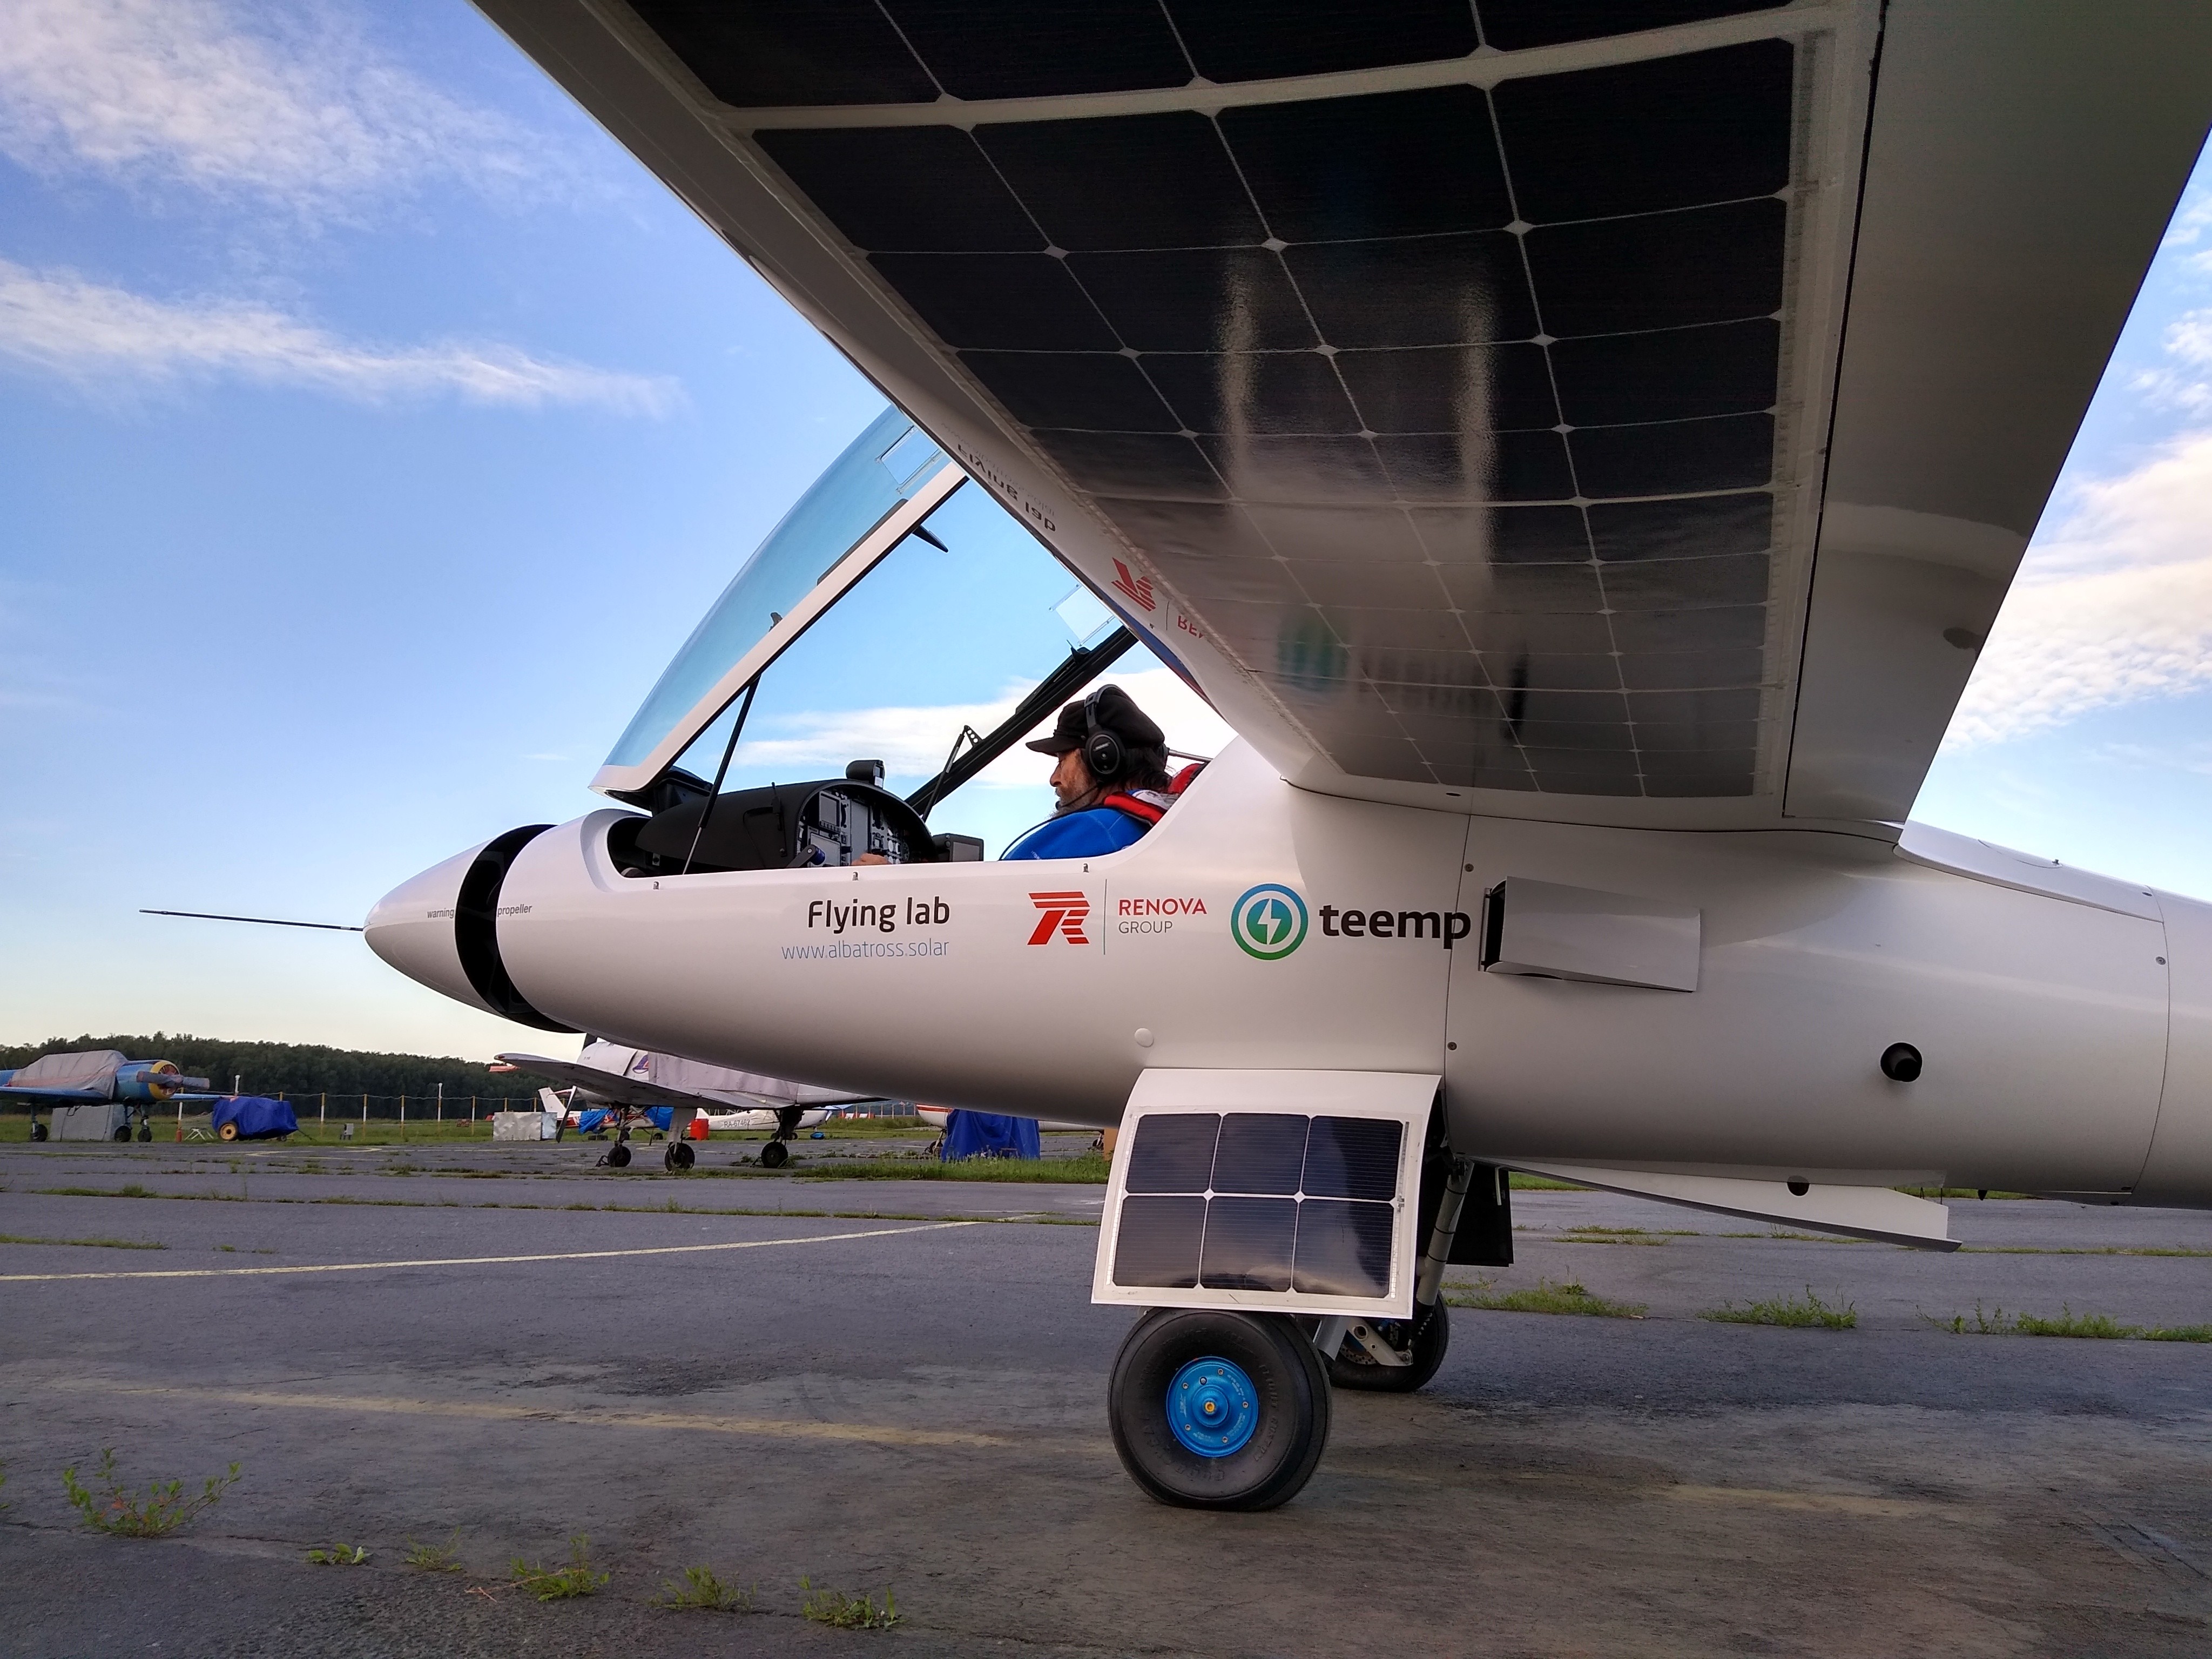 Конюхов достиг Крыма на самолёте с солнечными батареями